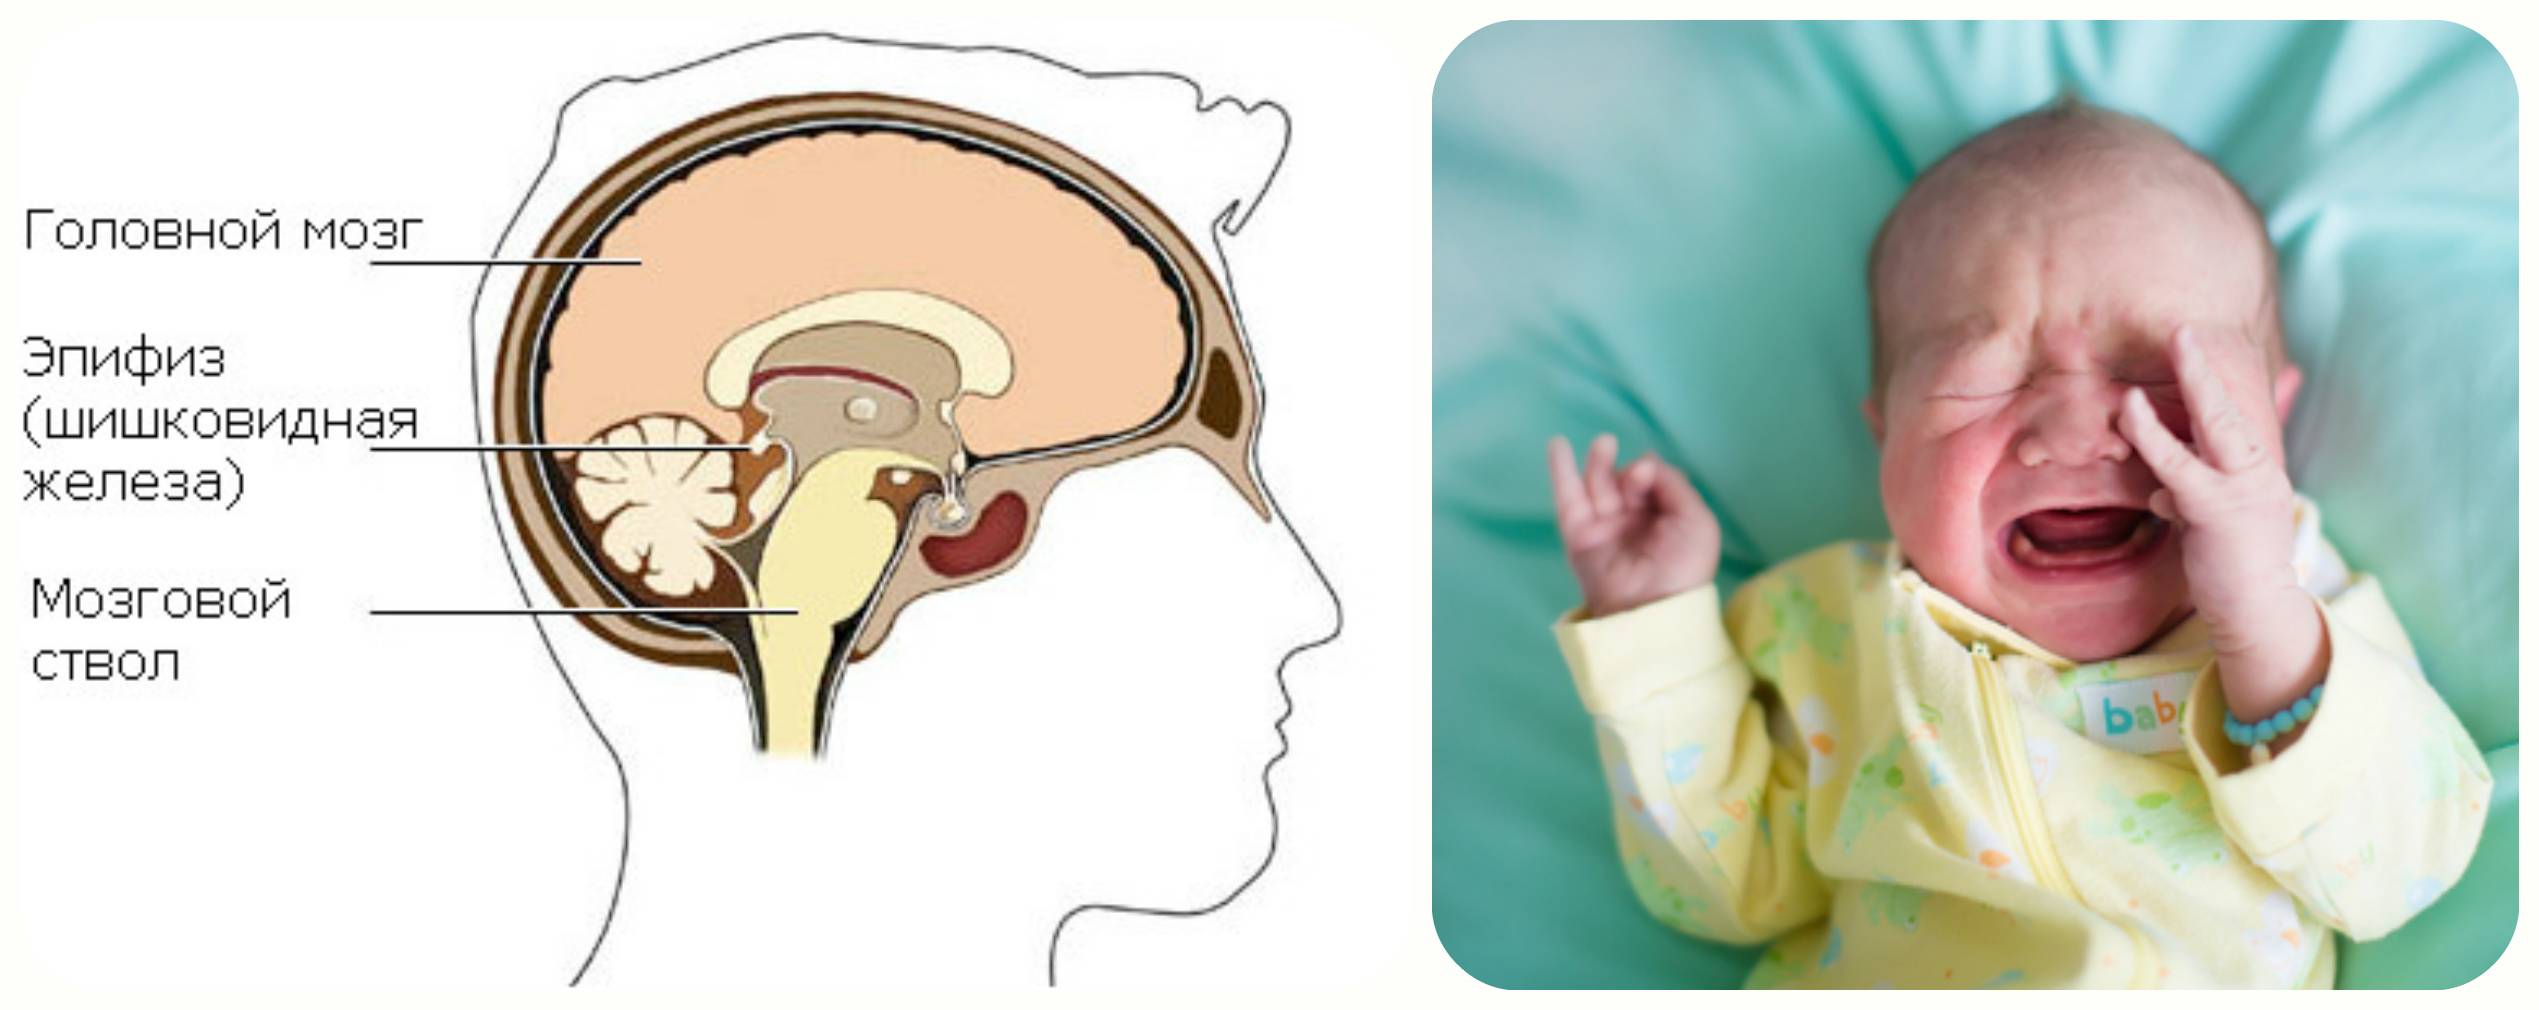 Особенности псевдокисты головного мозга у новорожденного